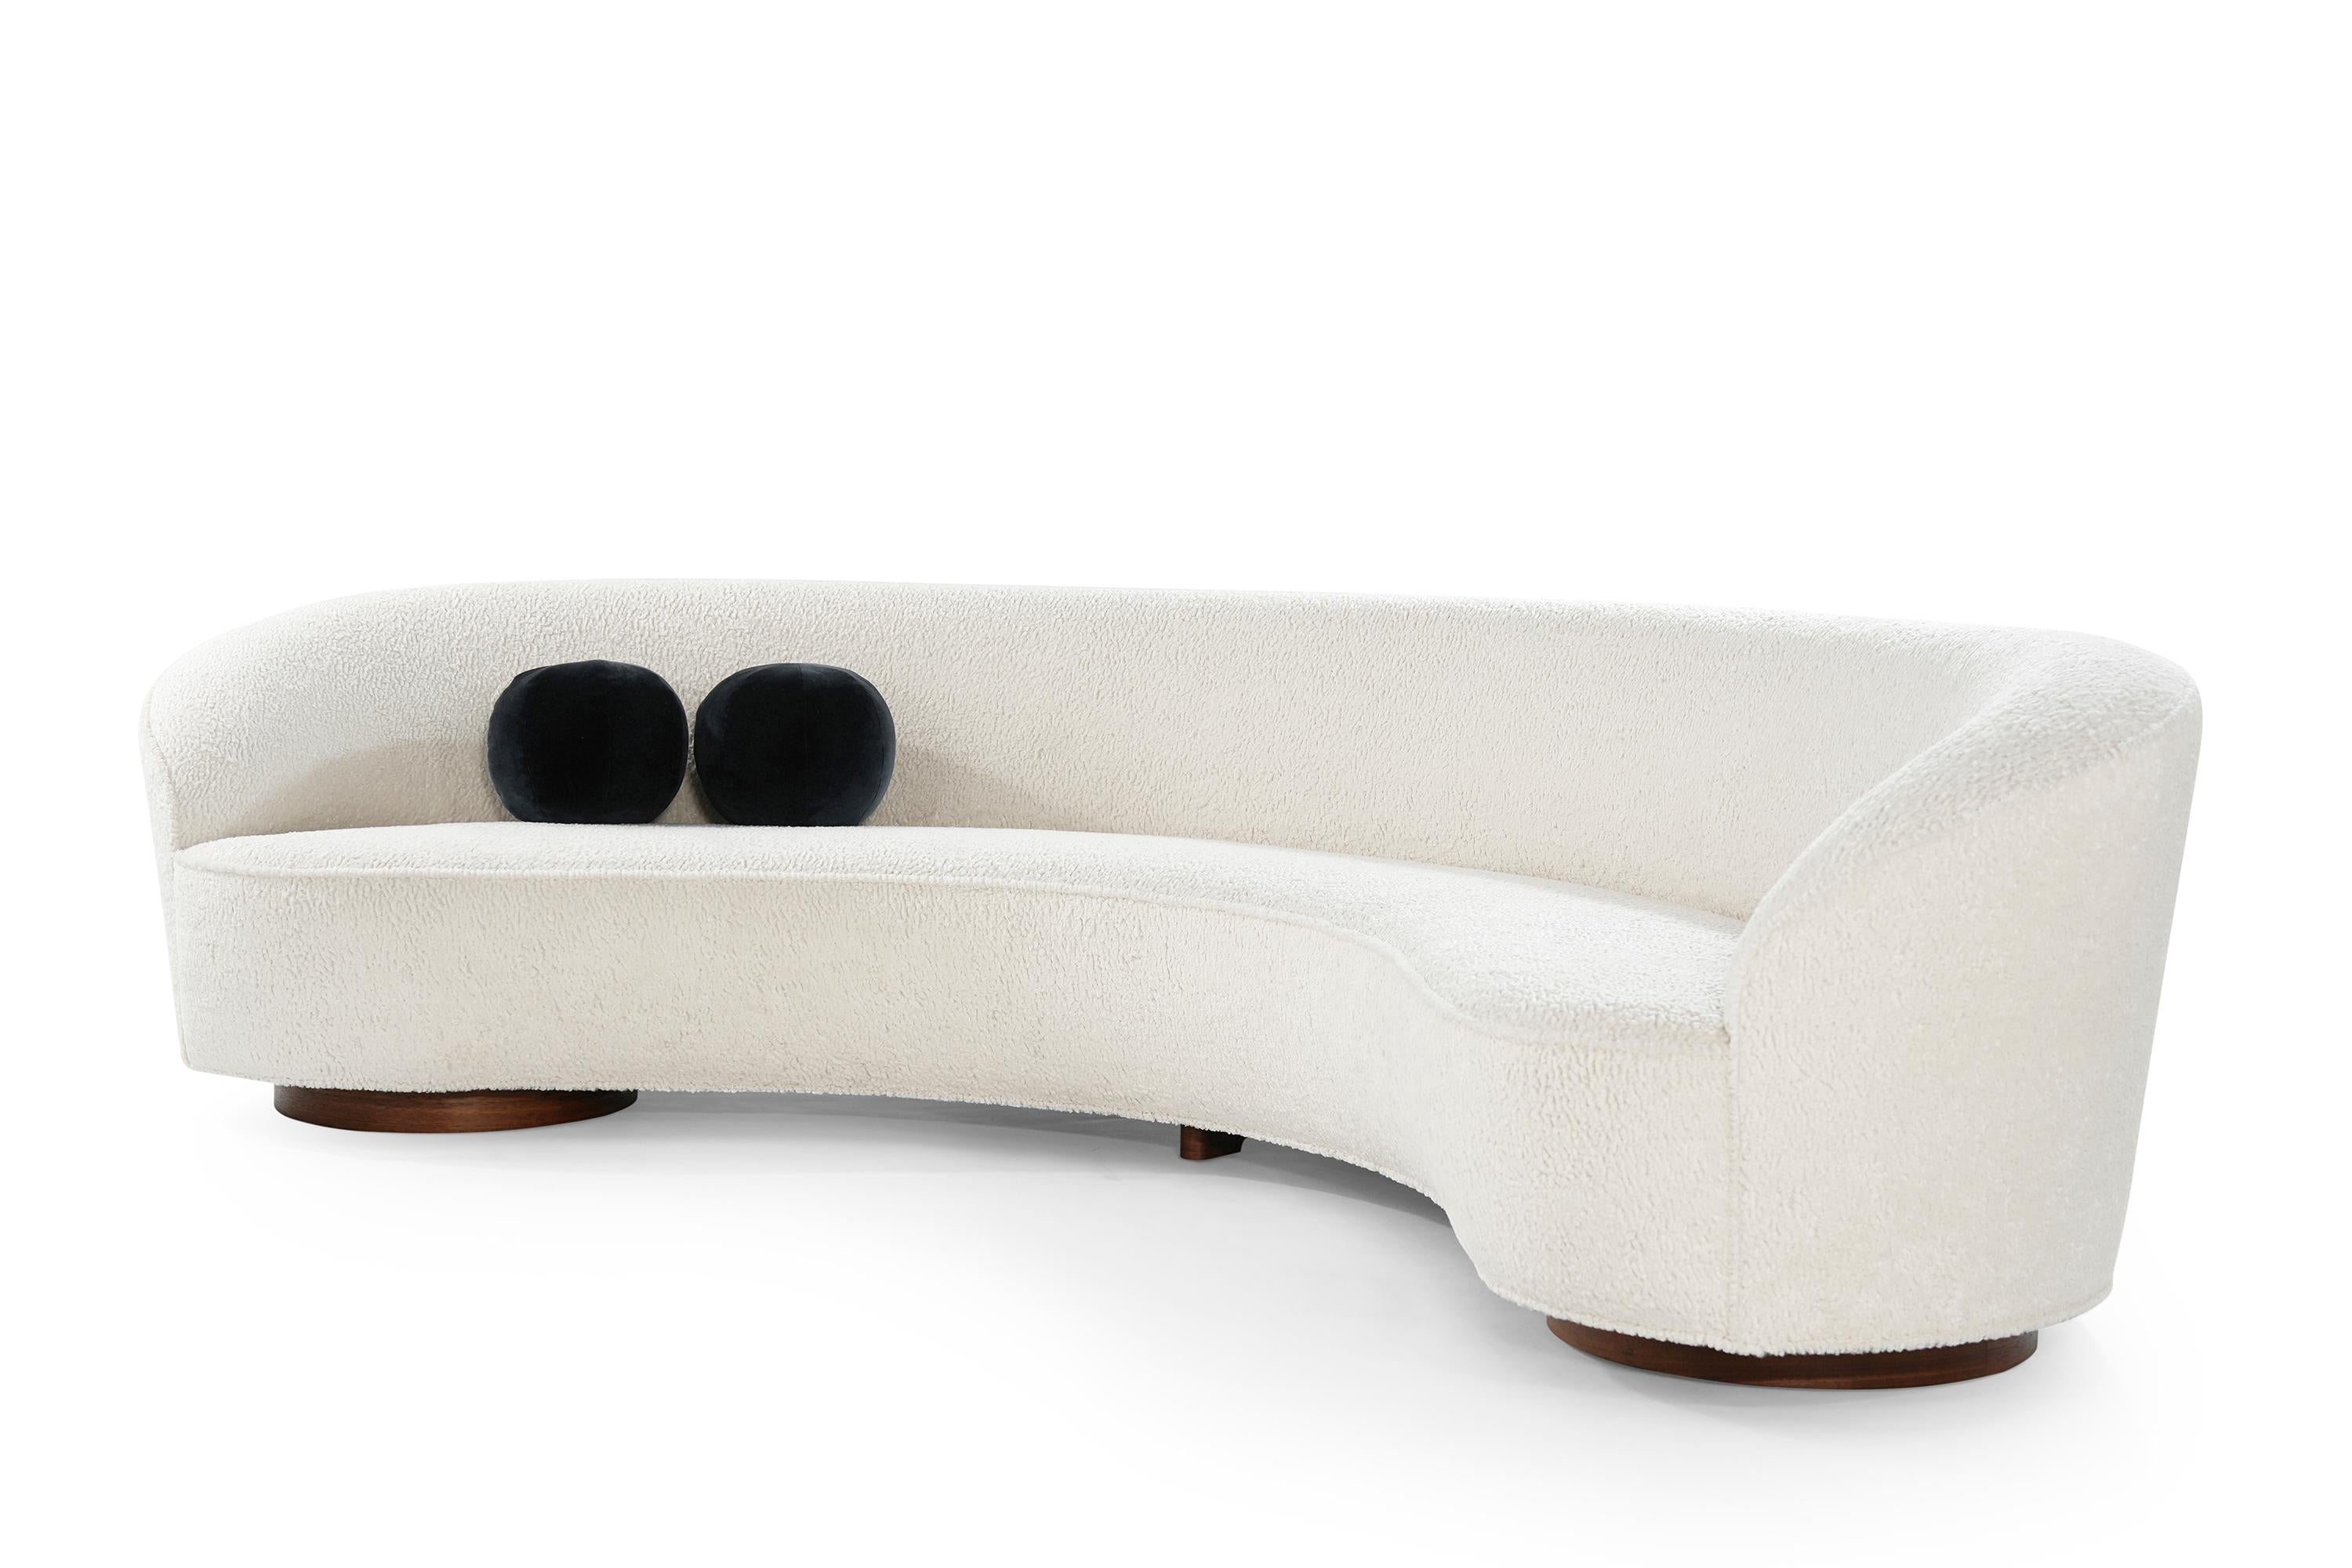 American Vladimir Kagan 'Sloane' Sofa, Model 7550